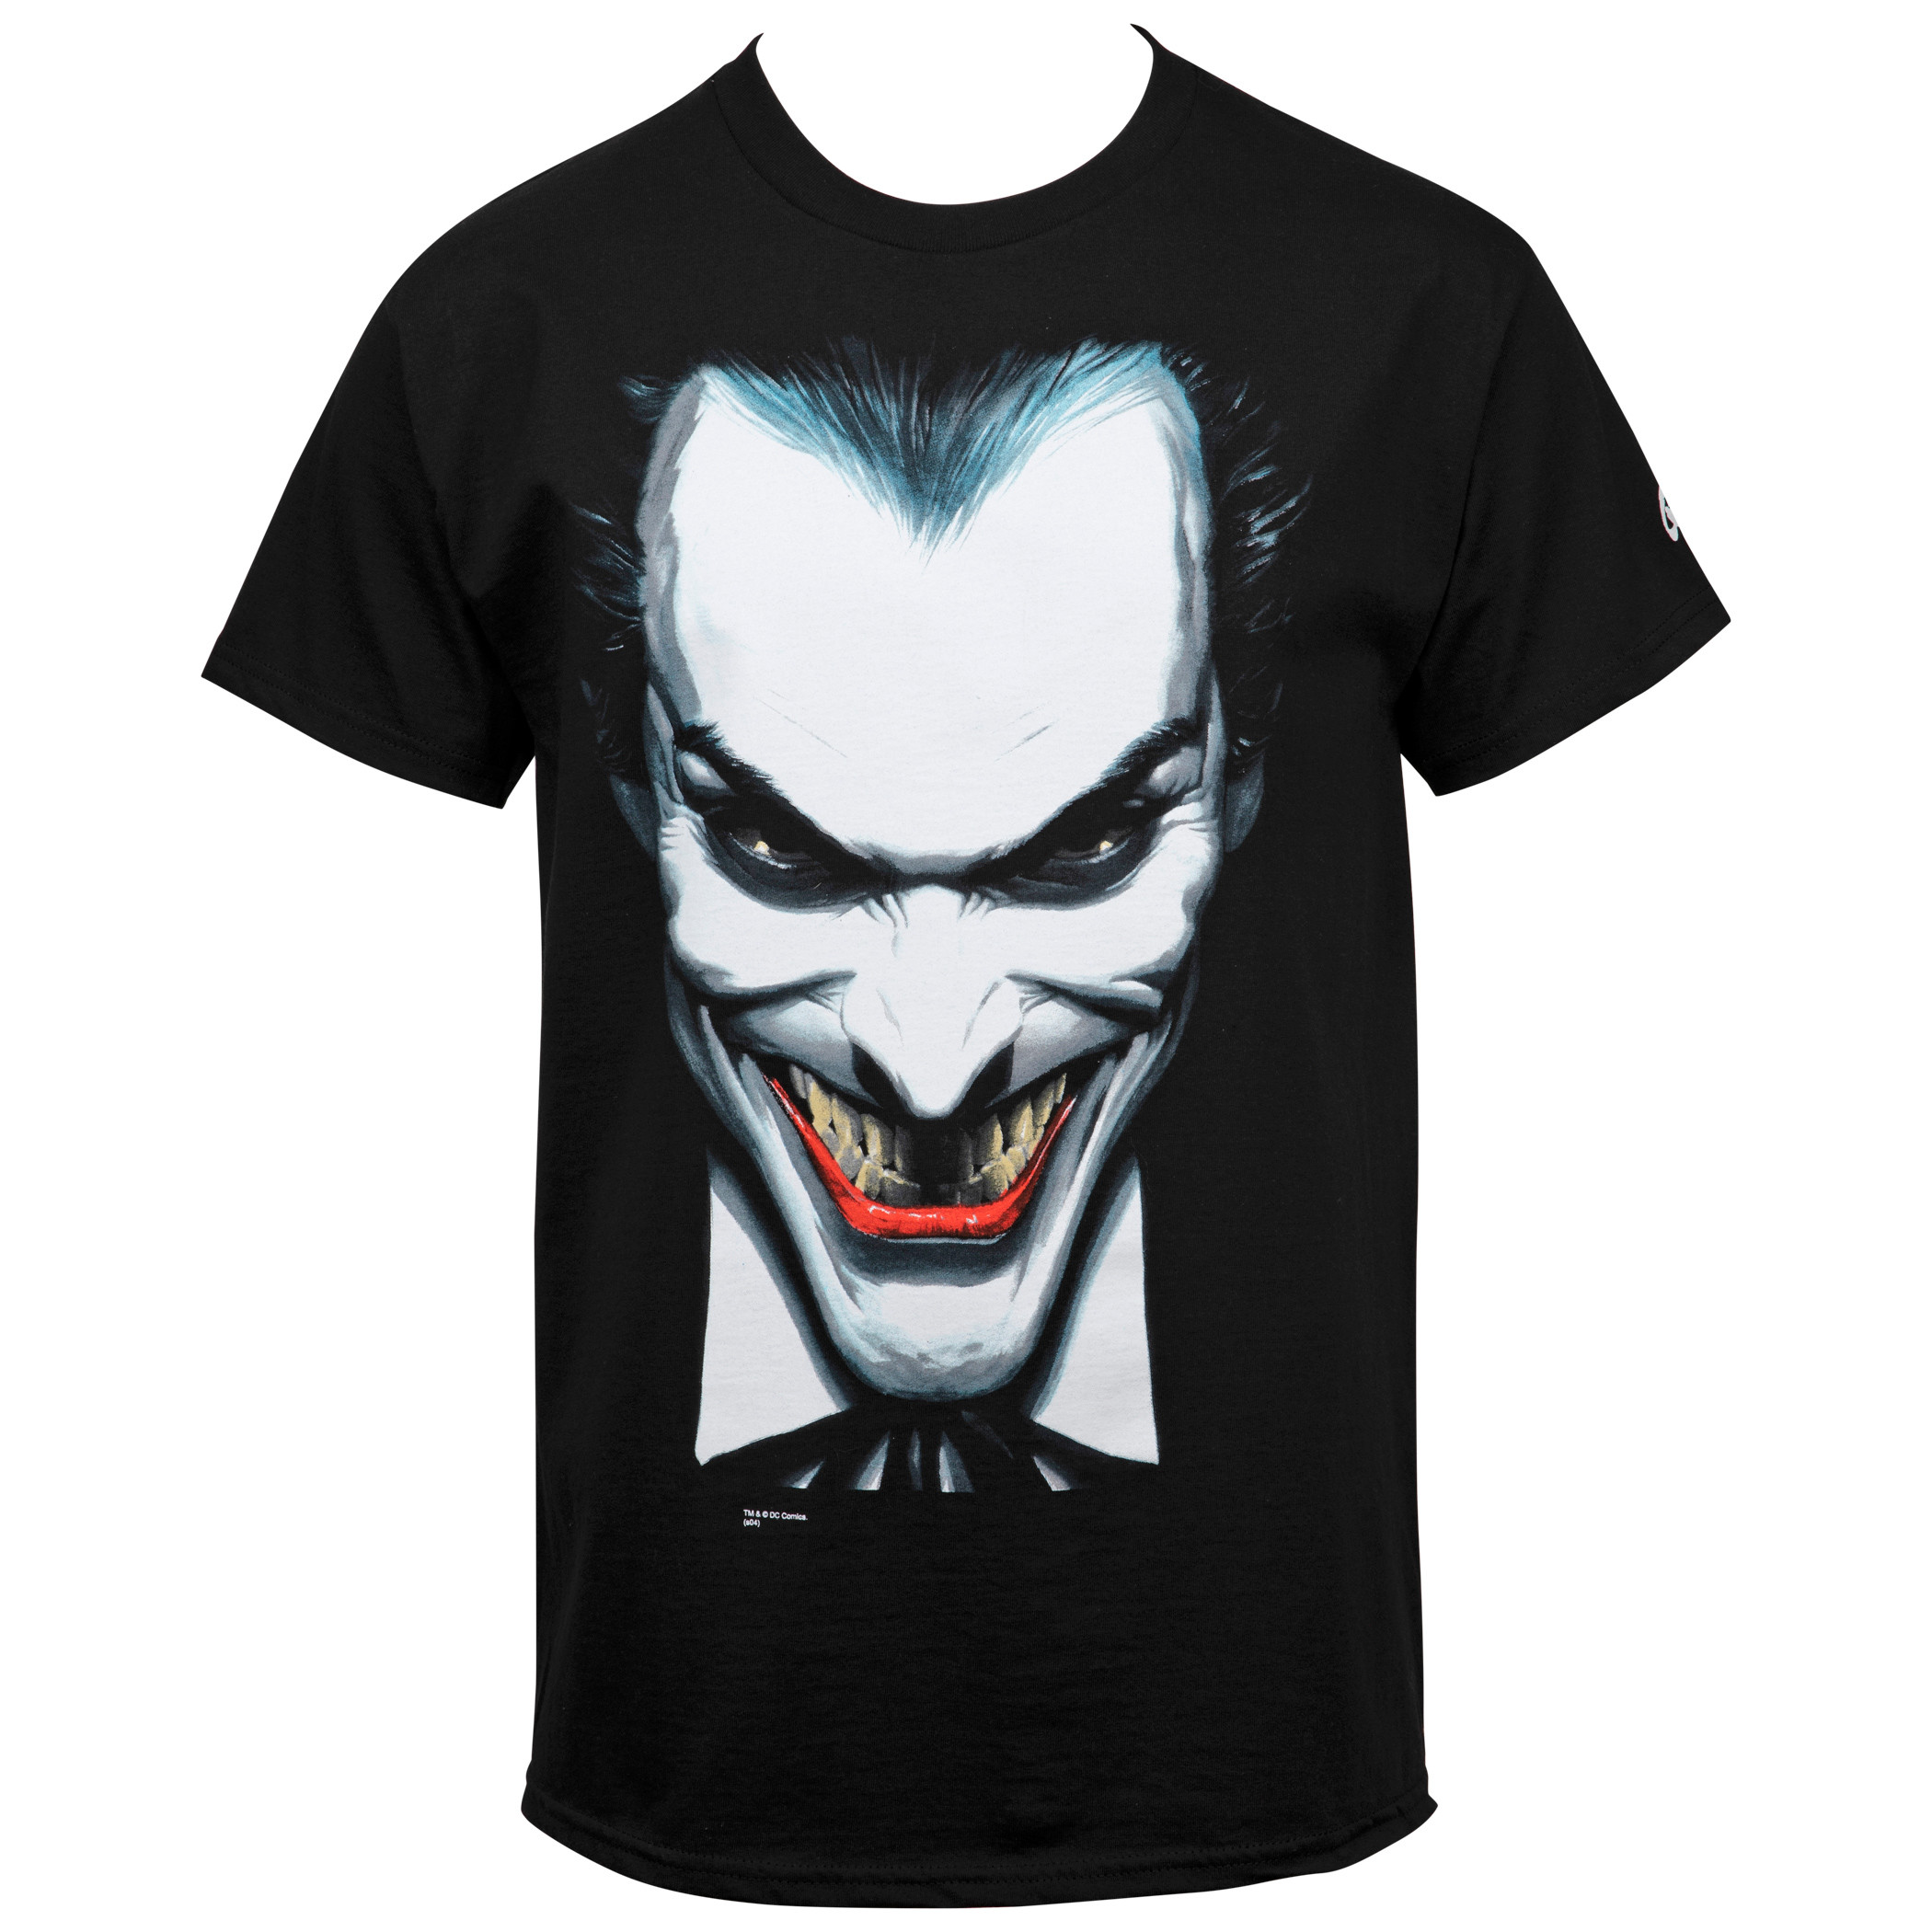 The Joker Close Up T-Shirt